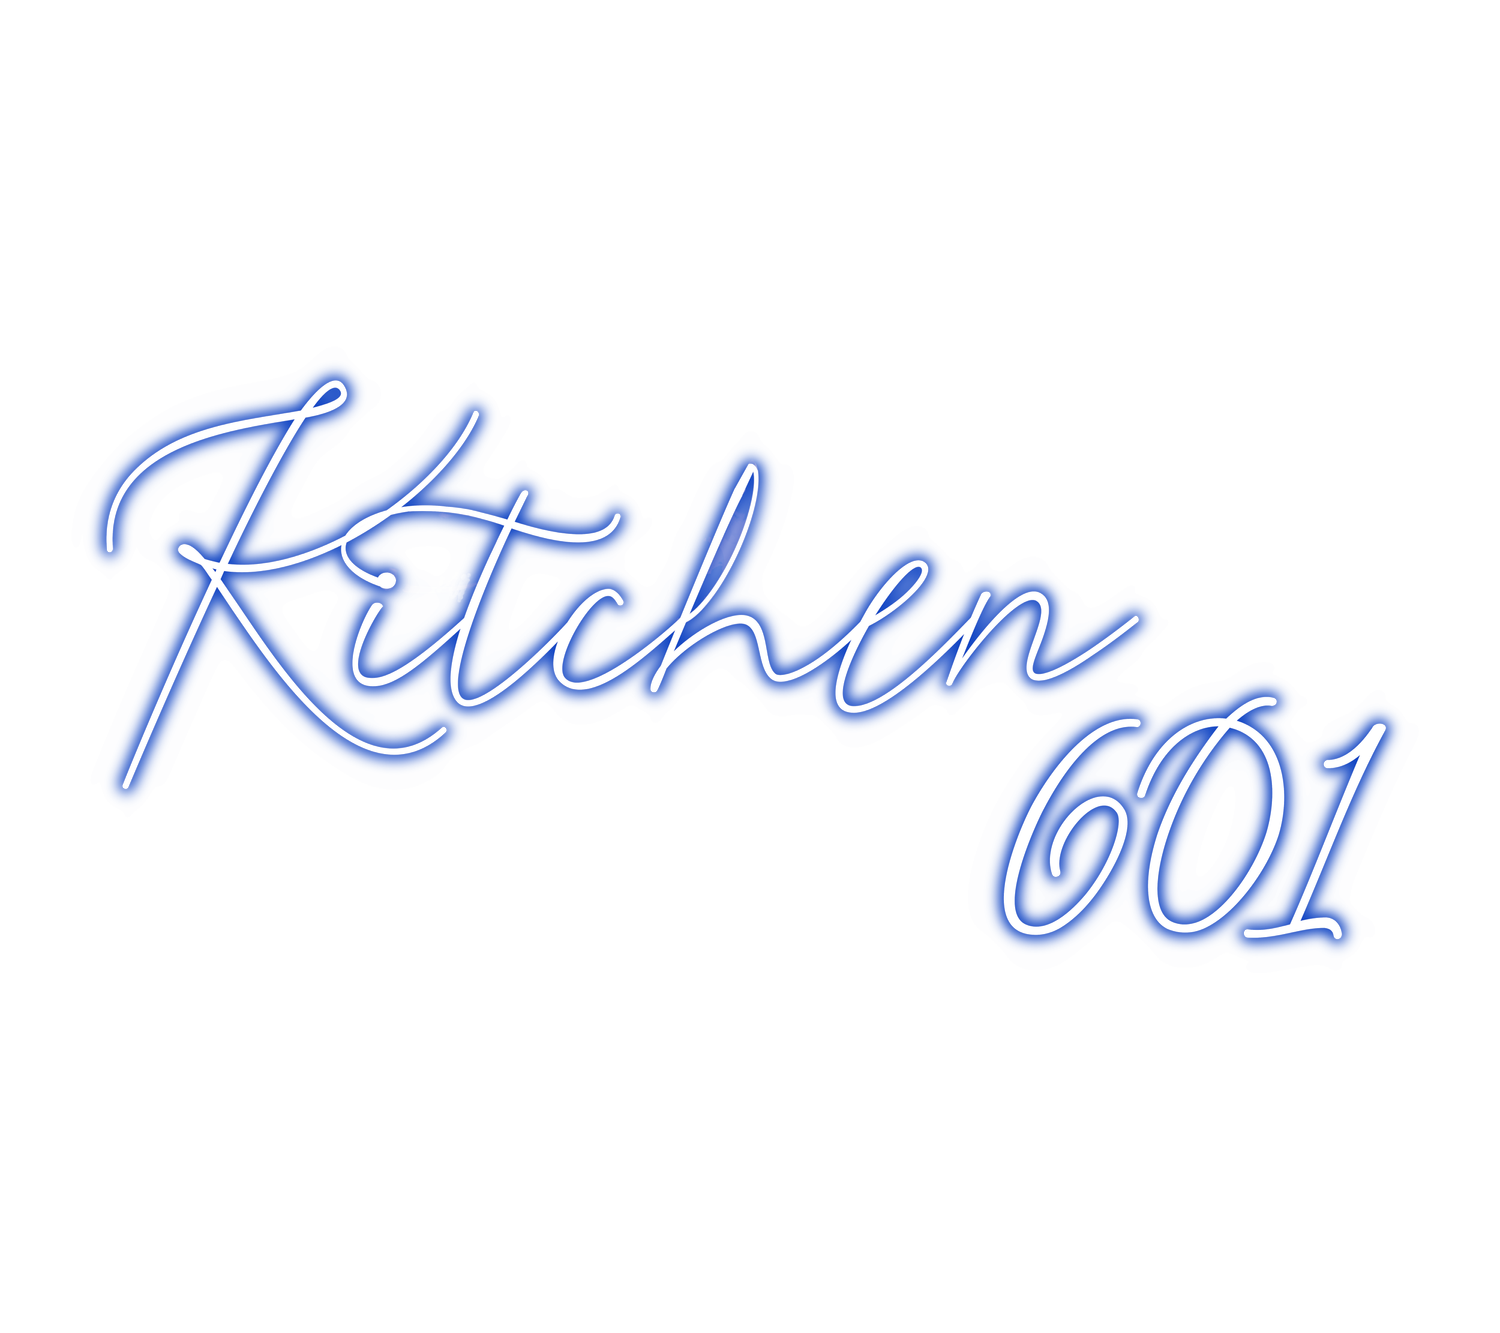 Kitchen 601